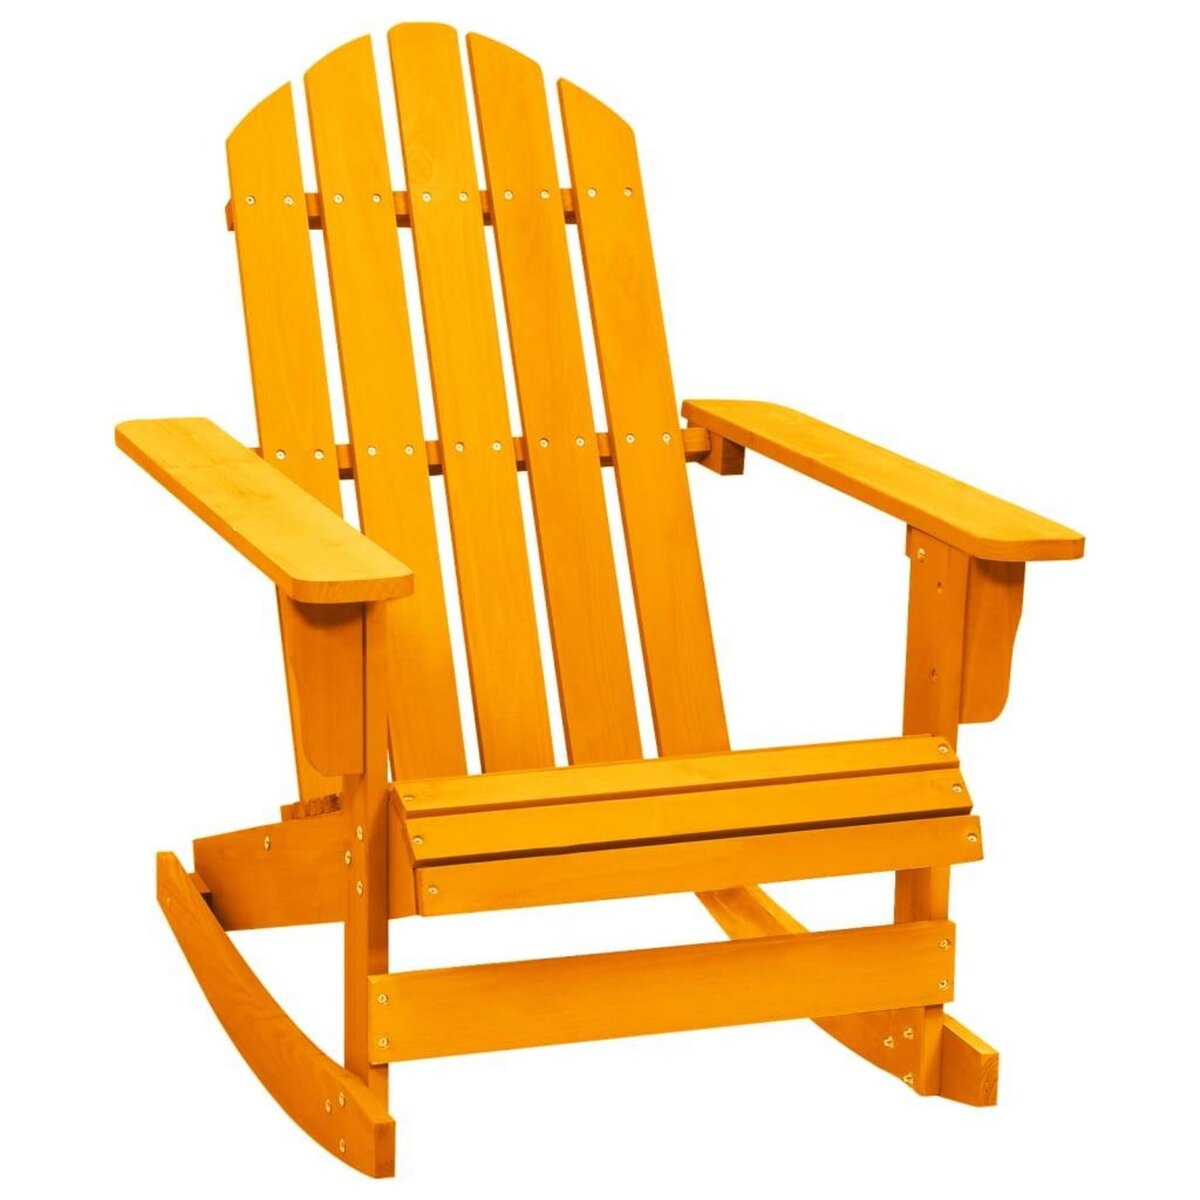 VIDAXL Chaise a bascule de jardin Adirondack Bois de sapin Orange